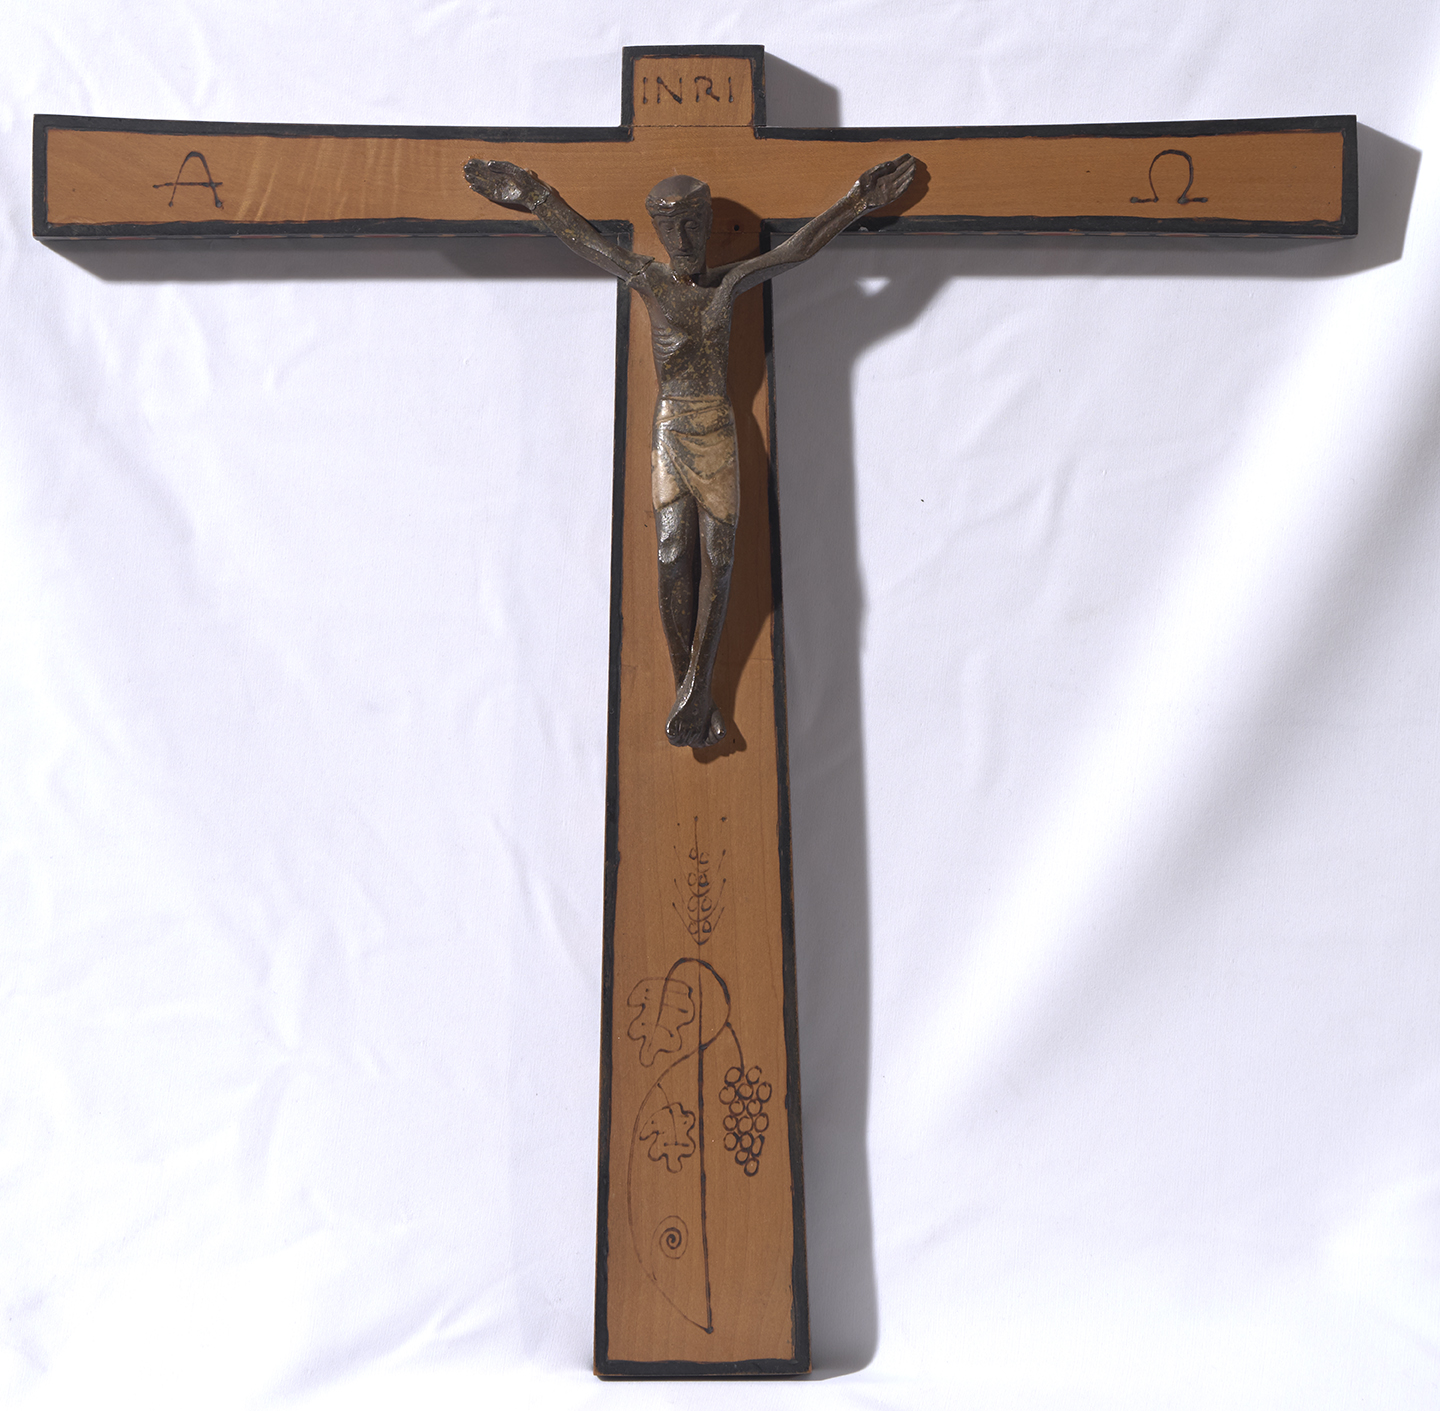 Creu de fusta adornada